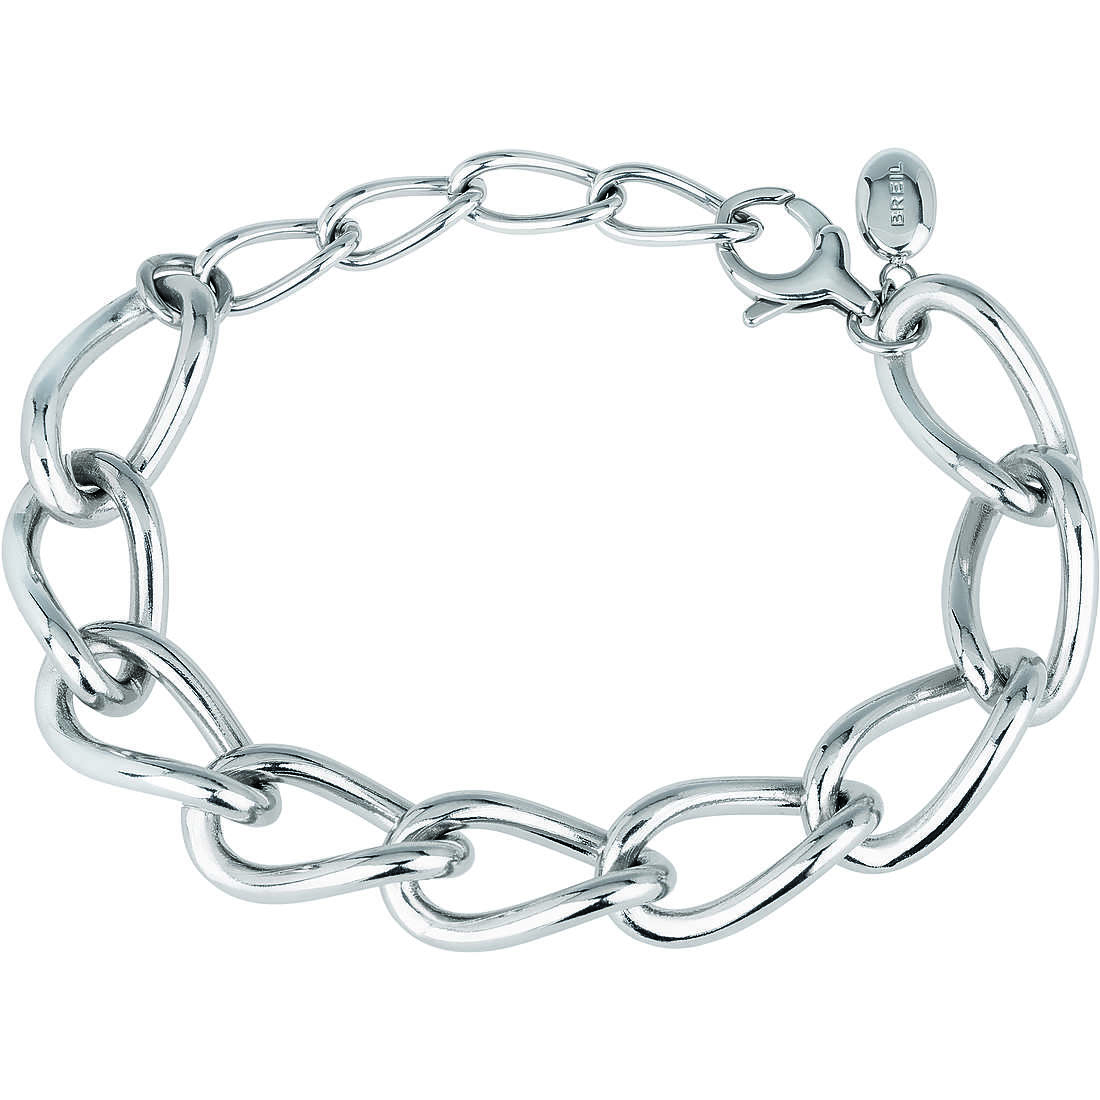 bracelet woman jewellery Breil Join Up TJ2917